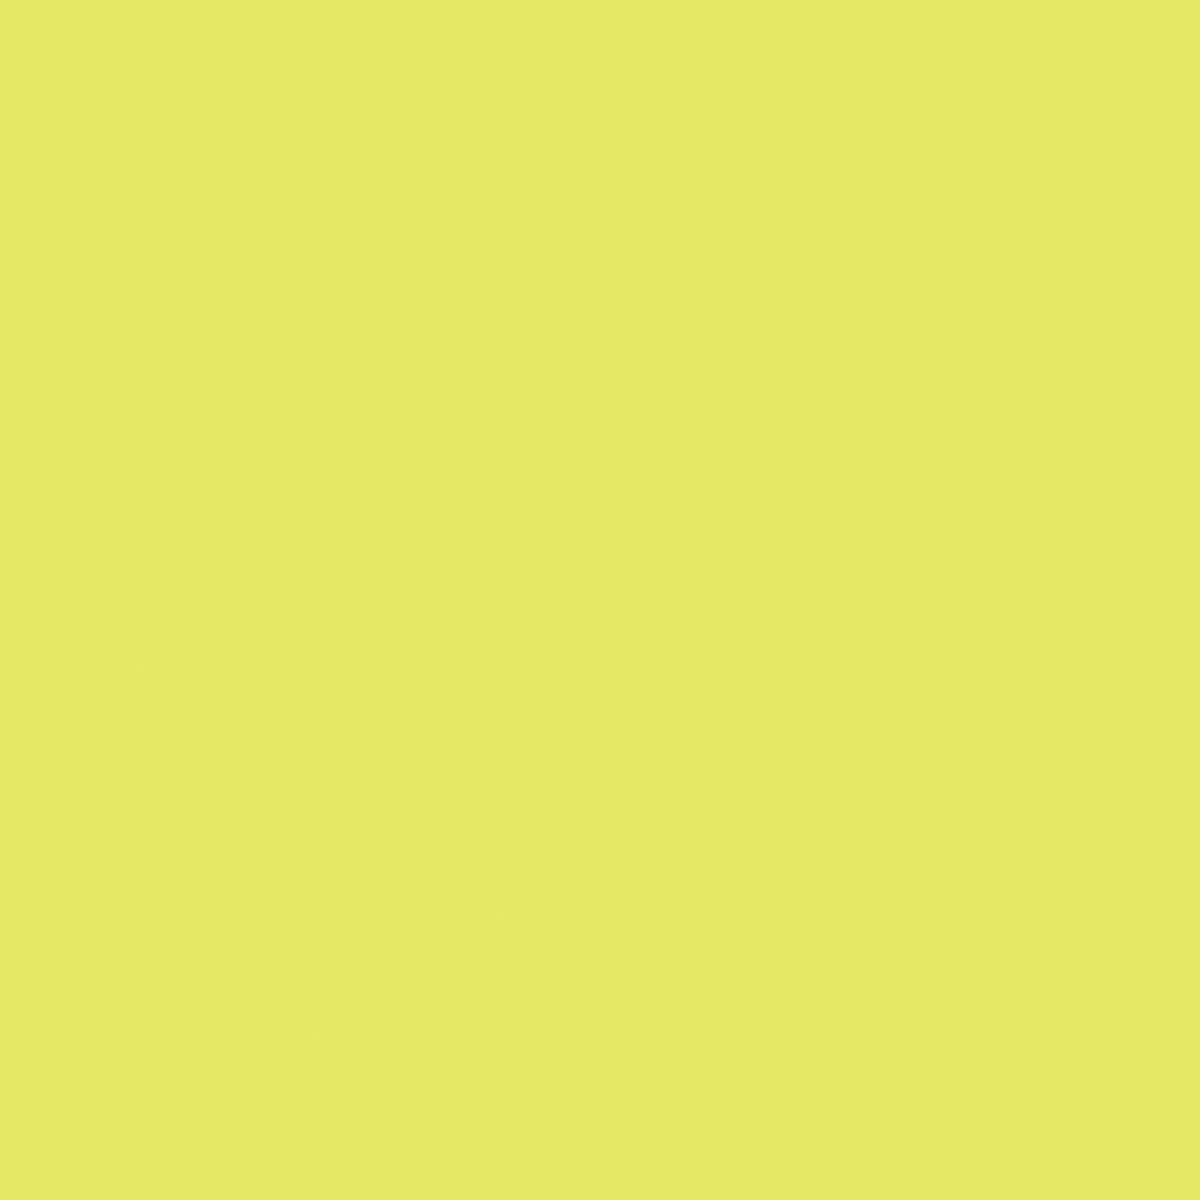 Yellow Tiles for Living Room Tiles, Bedroom Tiles, Commercial Tiles, Office Tiles, Dining Room Tiles, Restaurant Tiles, Hospital Tiles, High Traffic Tiles, Bar/Restaurant, Commercial/Office